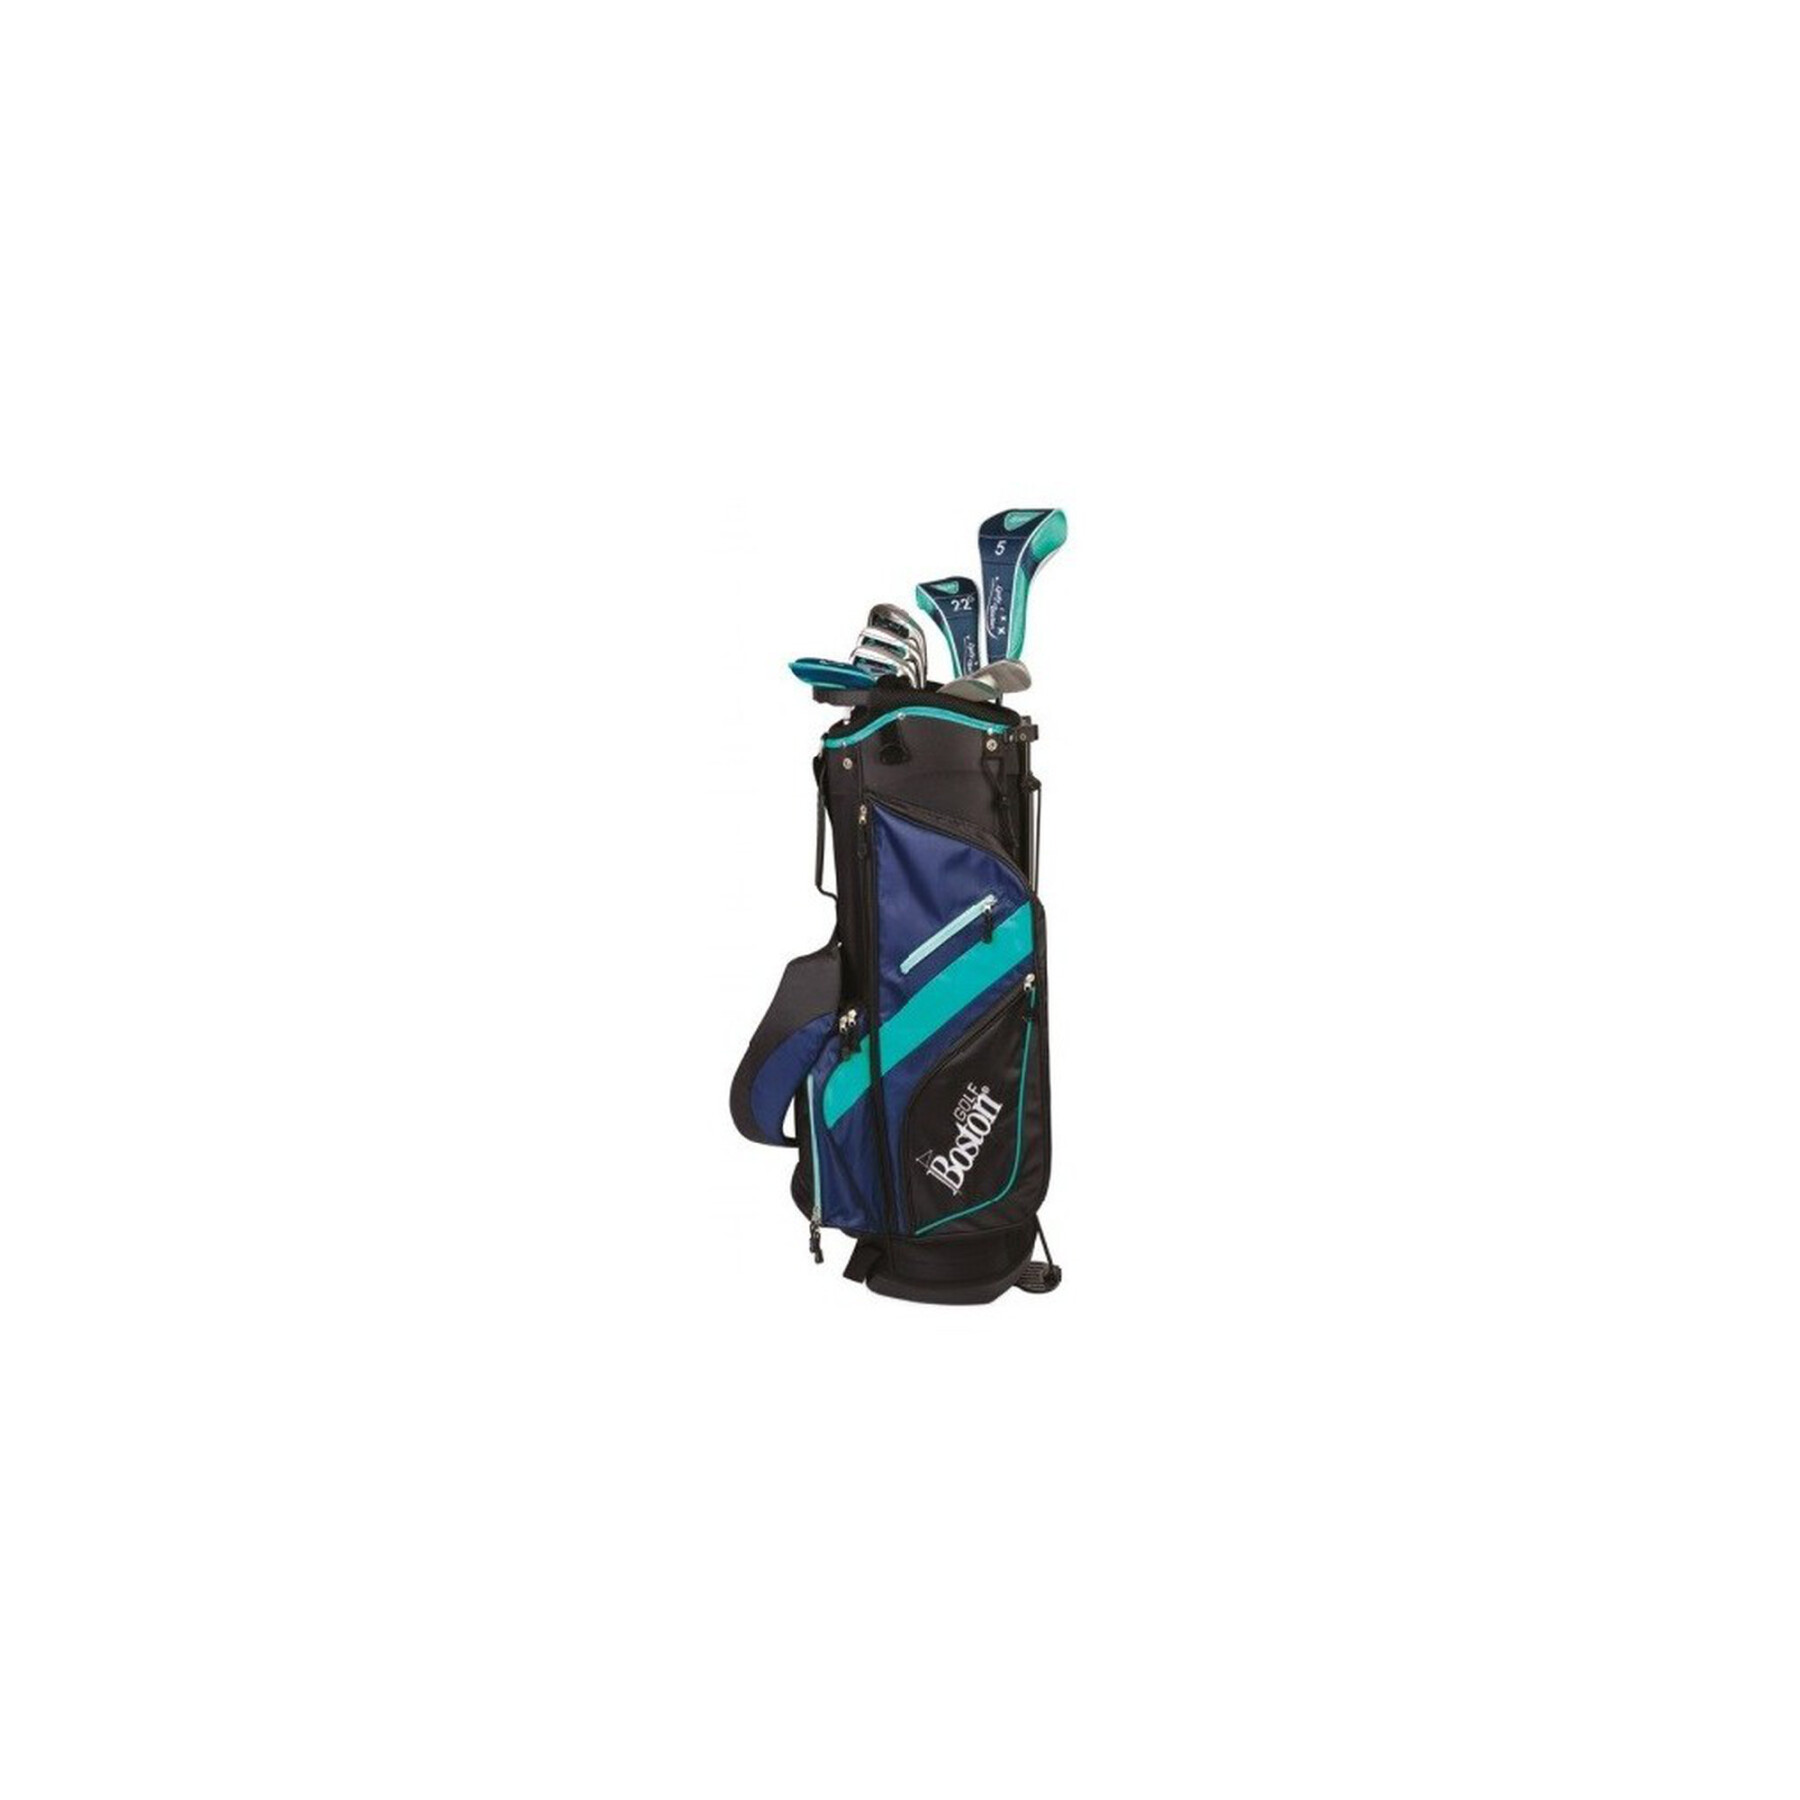 Kit (väska + 11 klubbor) högerhänt kvinna Boston Golf canberra 8.5" 1/2 série